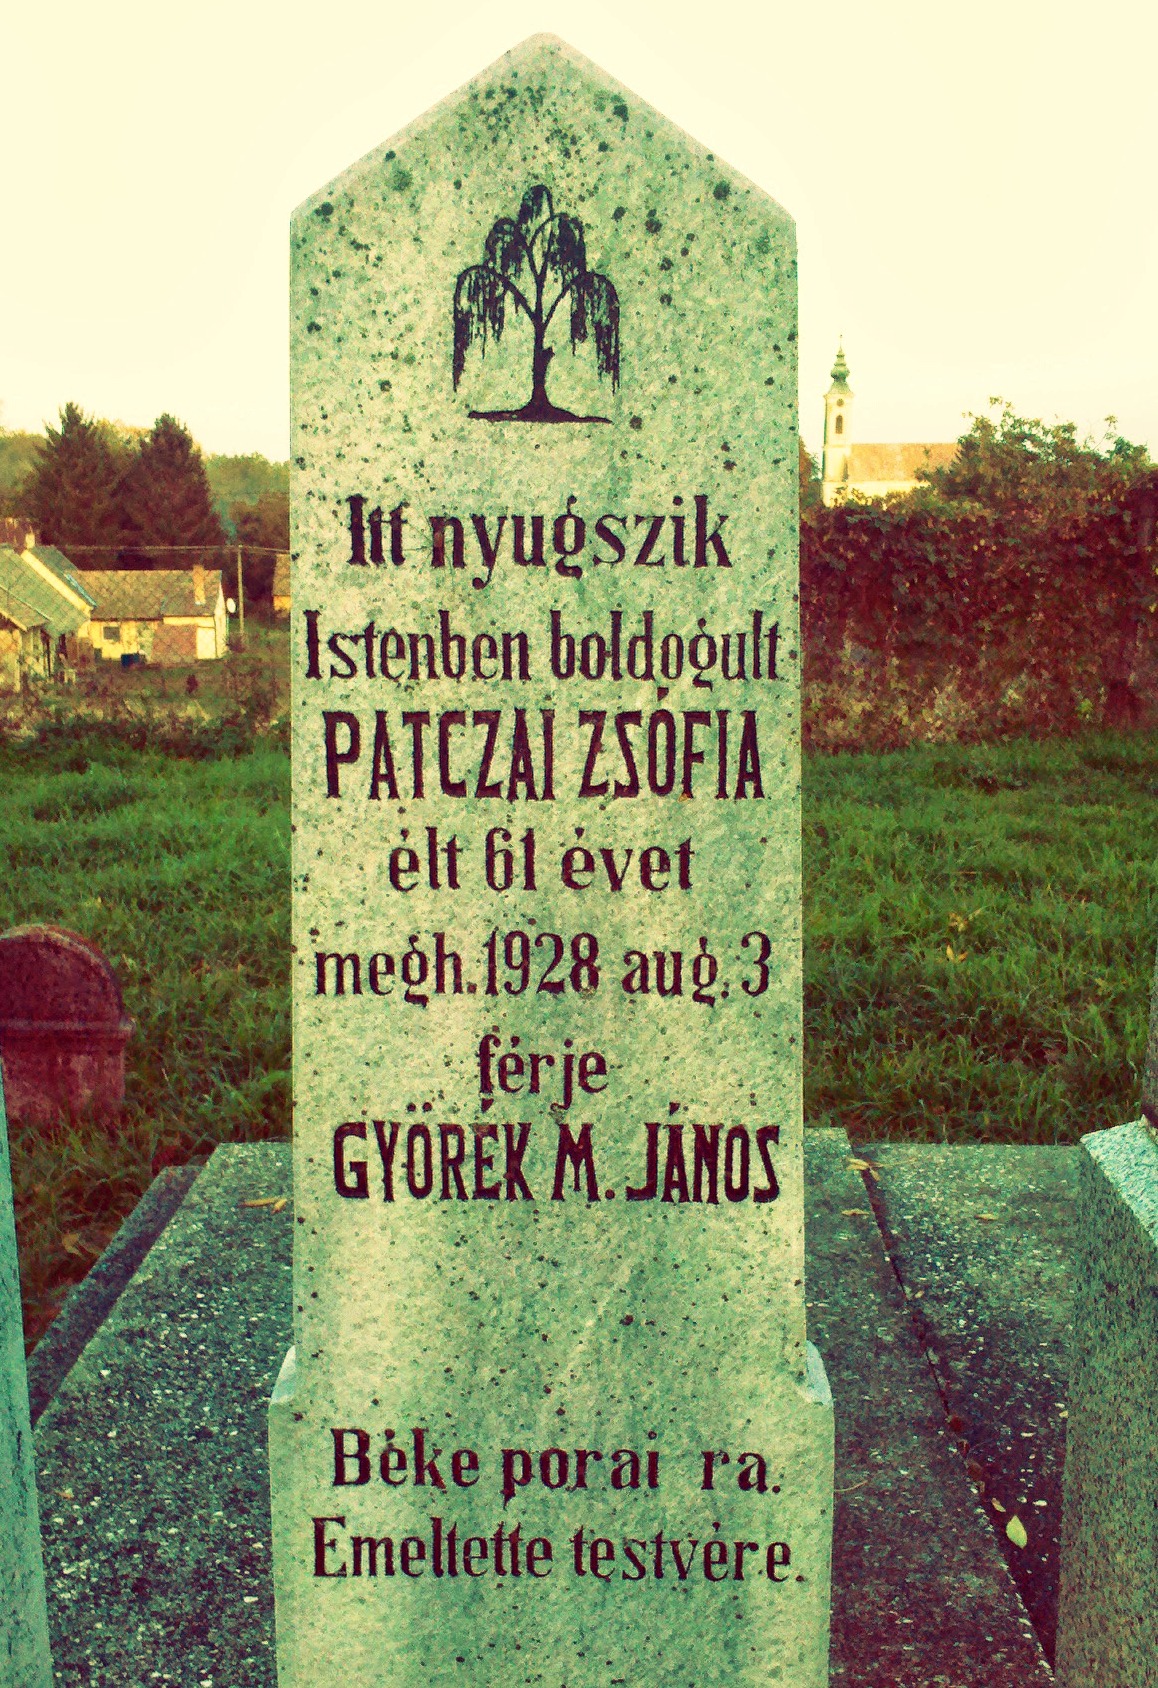 Györék János és Patczai Zsófia sírköve (Somogyjád).jpg